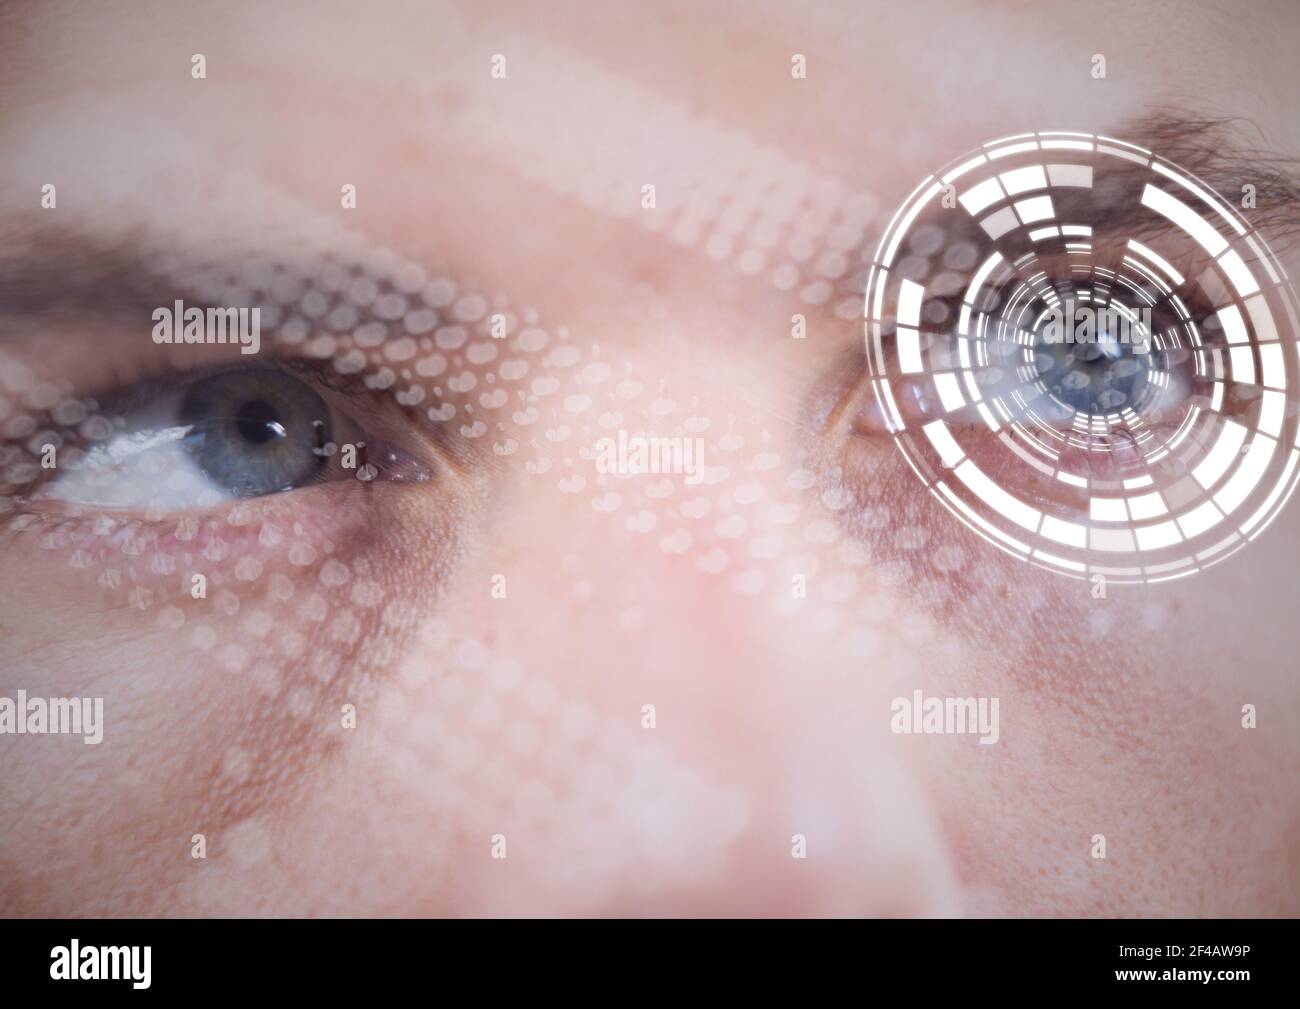 Immagine composita digitale dello scanner rotondo a fronte di un primo piano di occhi umani maschi Foto Stock